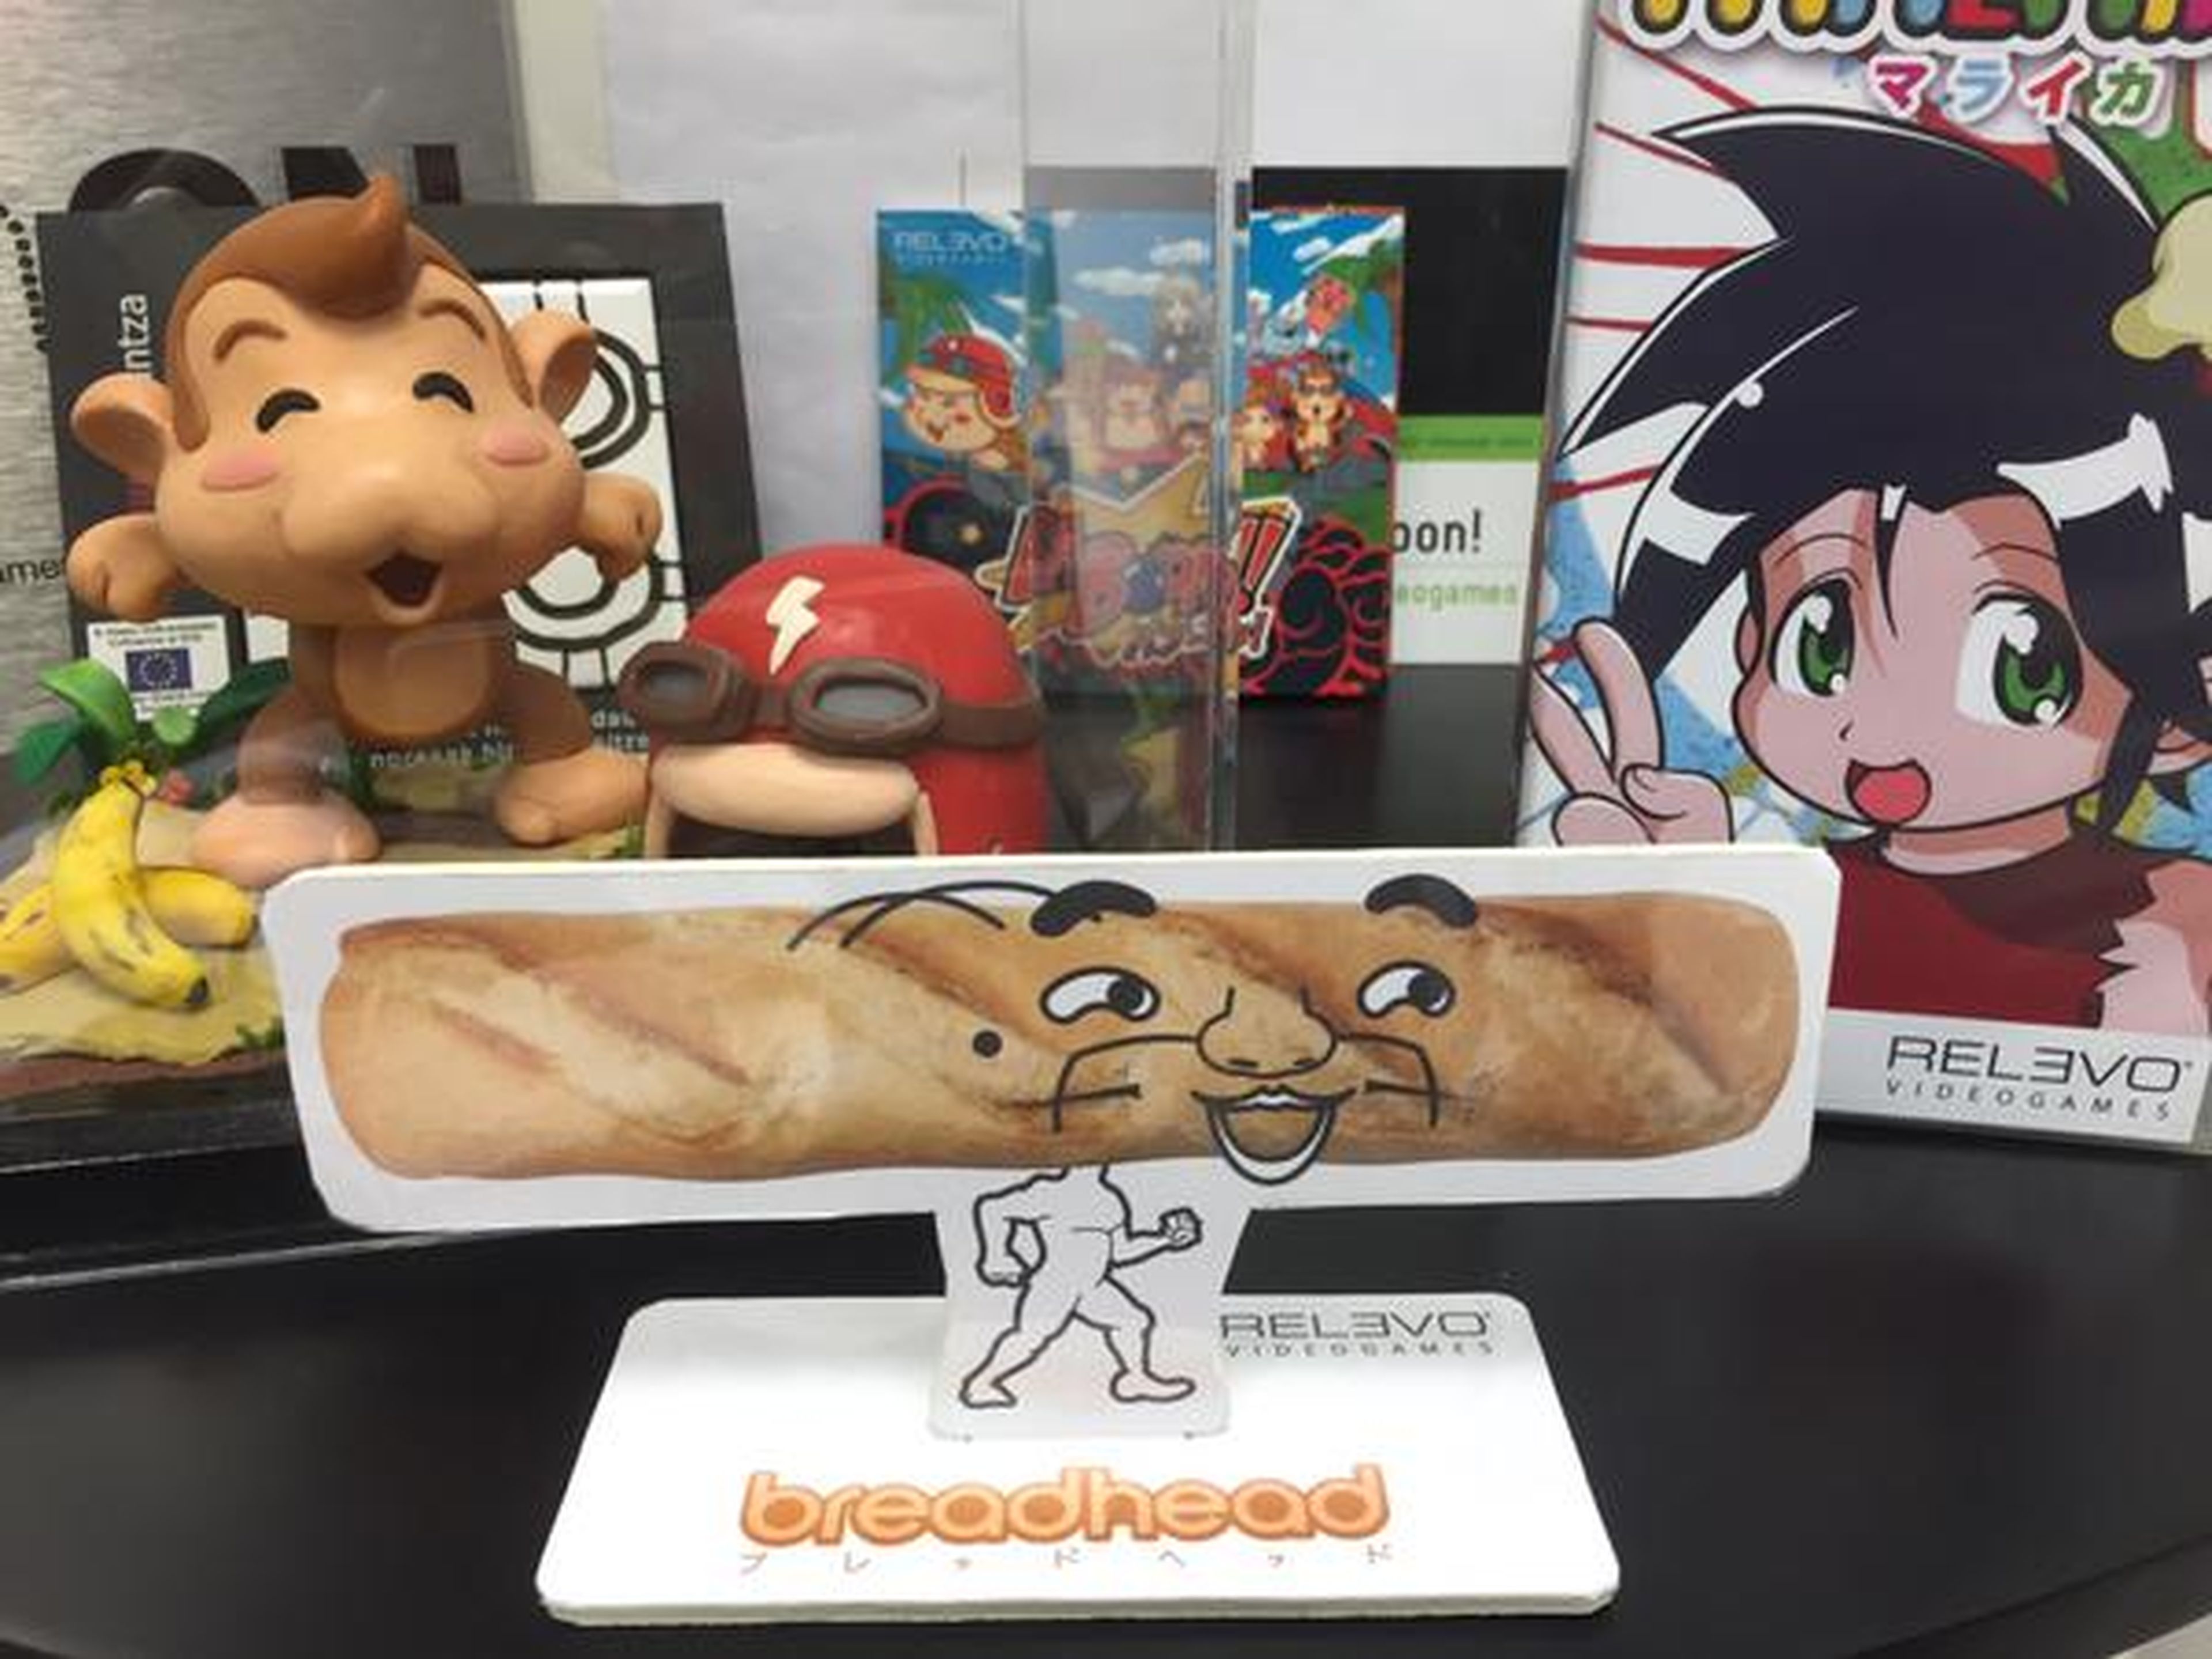 Con esta foto en Twitter Relevo Videogames avisaba de su próxima locura: BreadHead